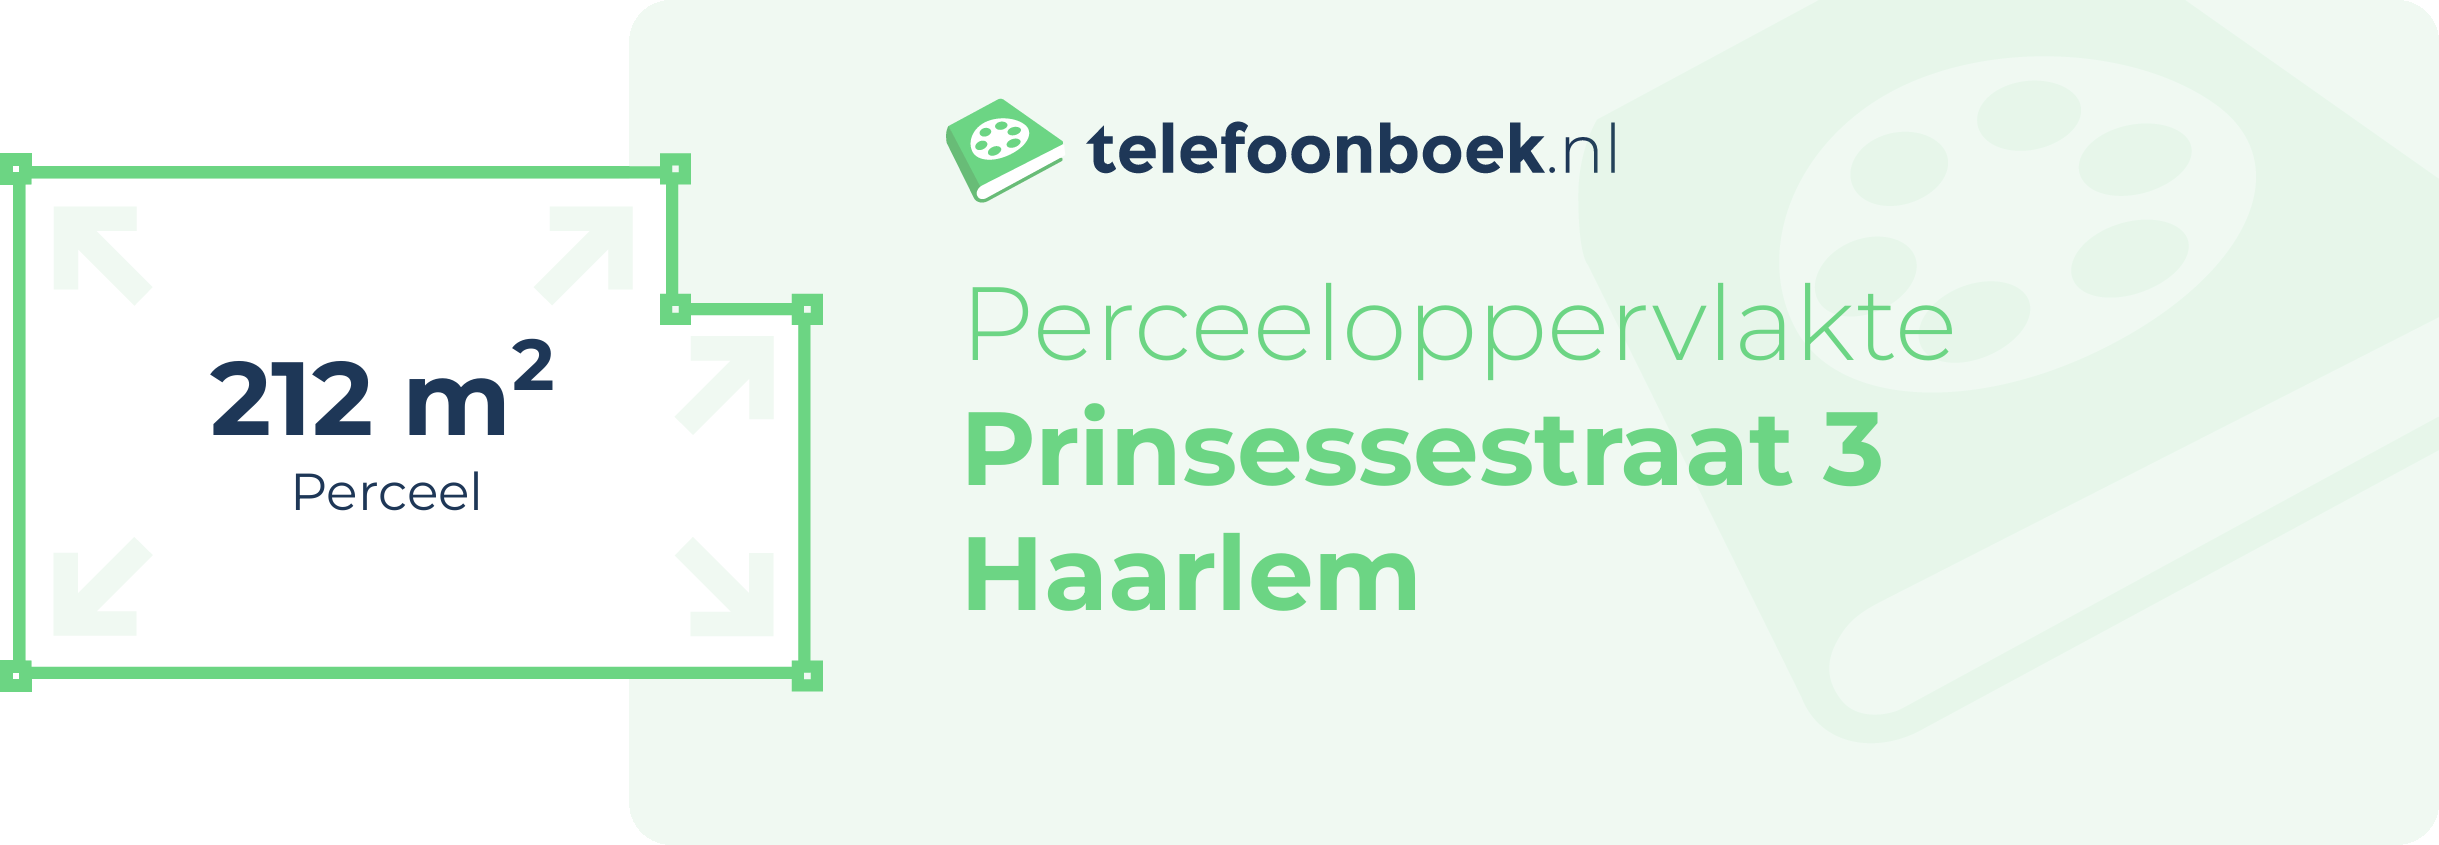 Perceeloppervlakte Prinsessestraat 3 Haarlem